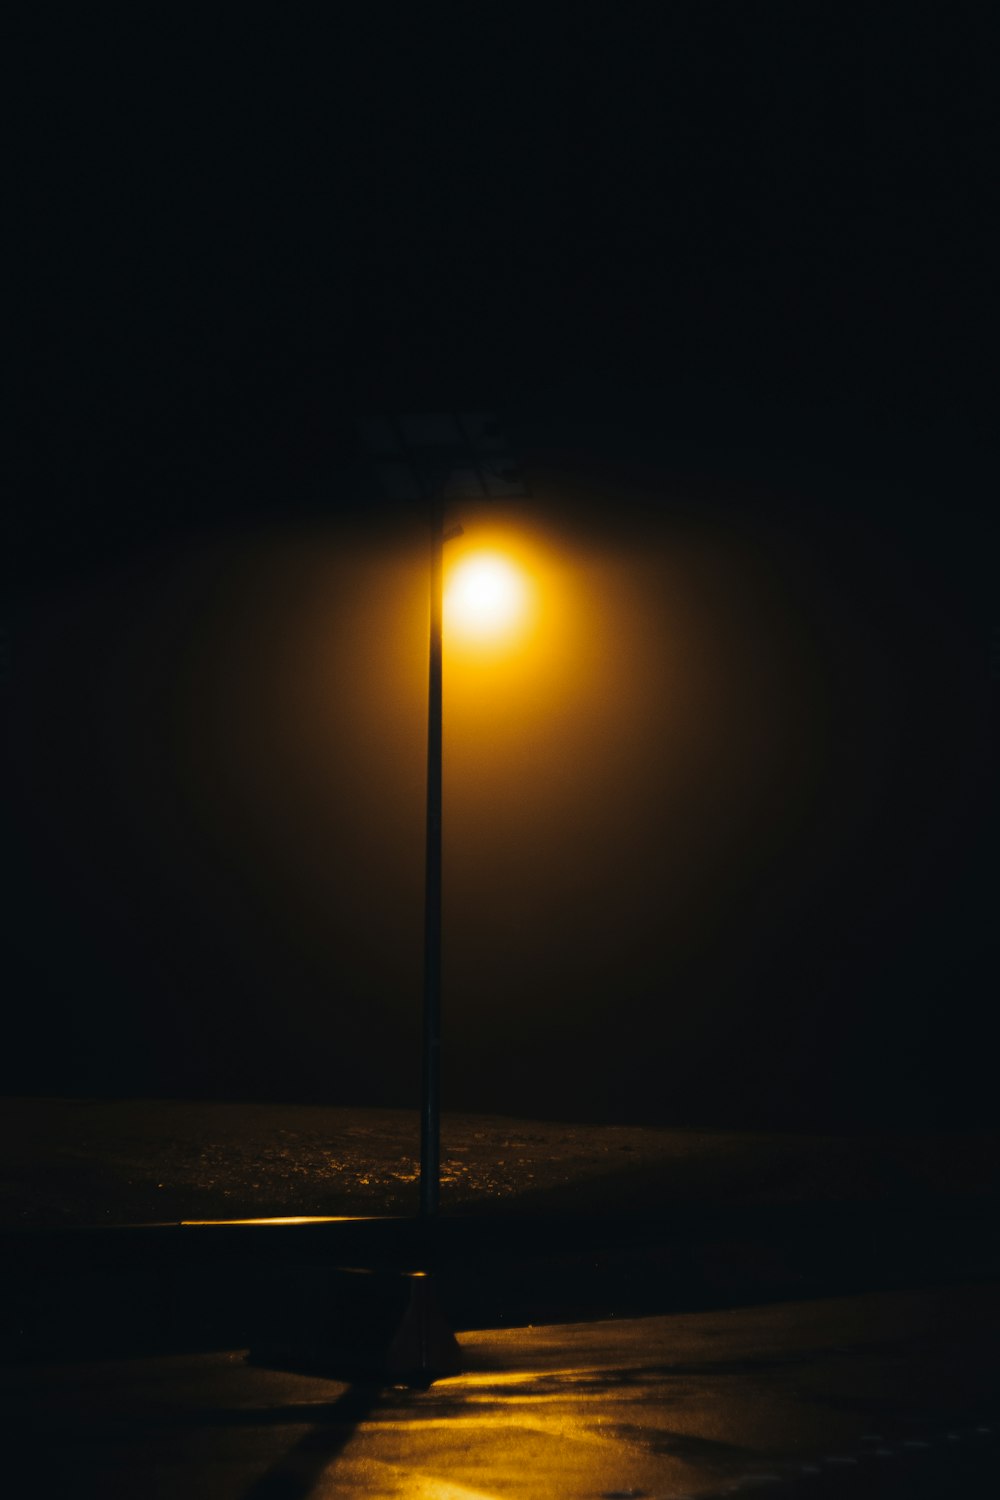 eine Straßenlaterne auf einer dunklen Straße in der Nacht